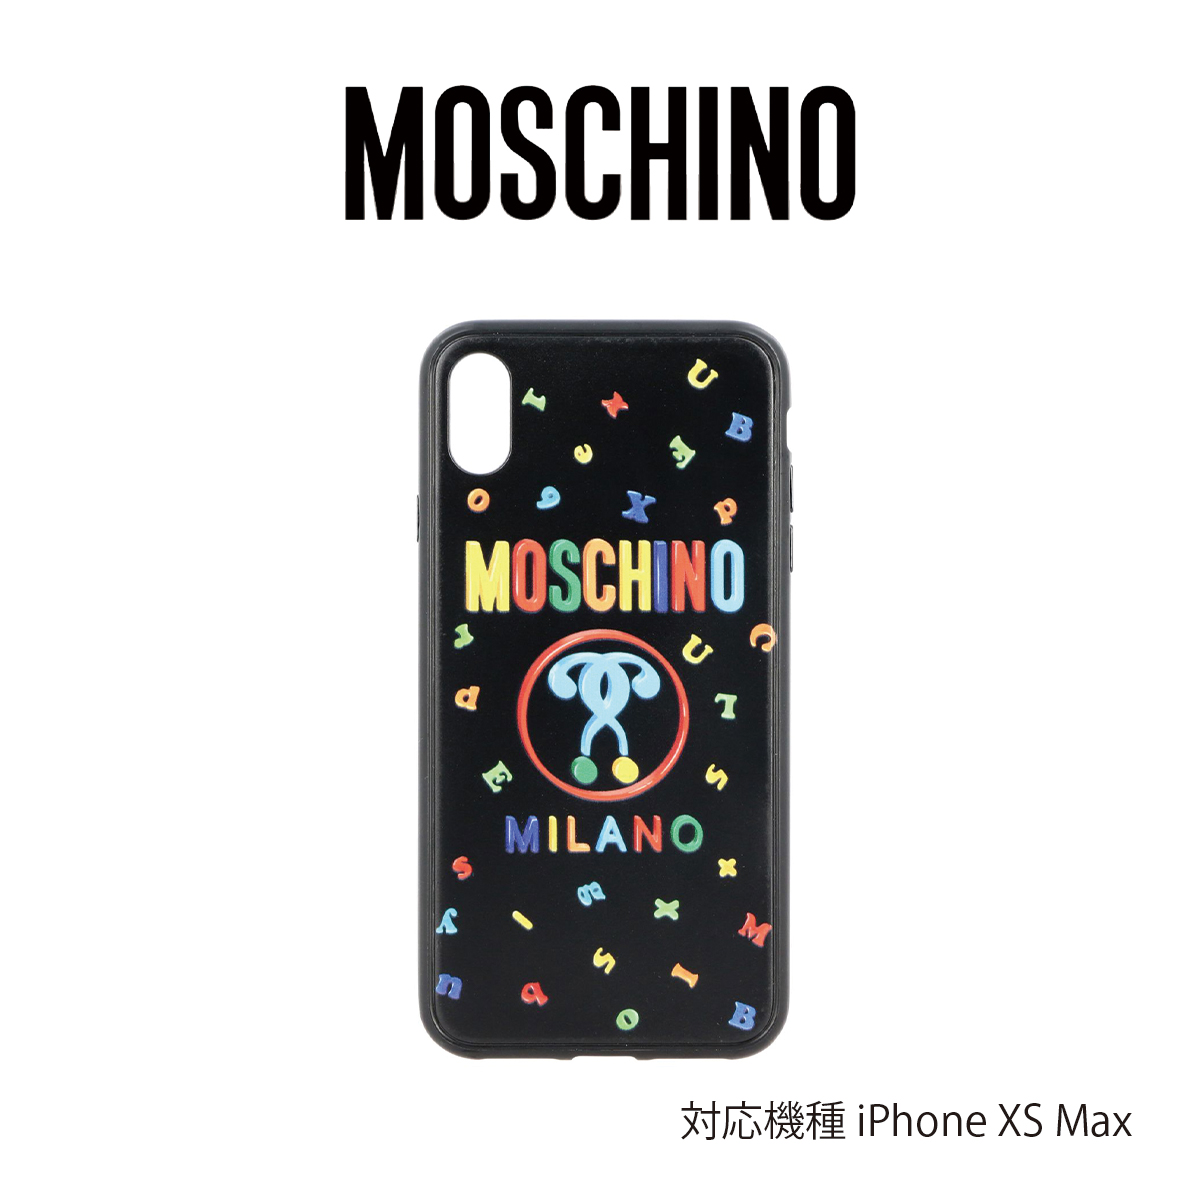 楽天市場 Moschino モスキーノ Iphone ケース Couture Teddy Tricolor Iphone 11 Pro 11 Pro Max ブラック トリコロール アイフォン カバー 携帯 Moschino スマホケース S S Shop